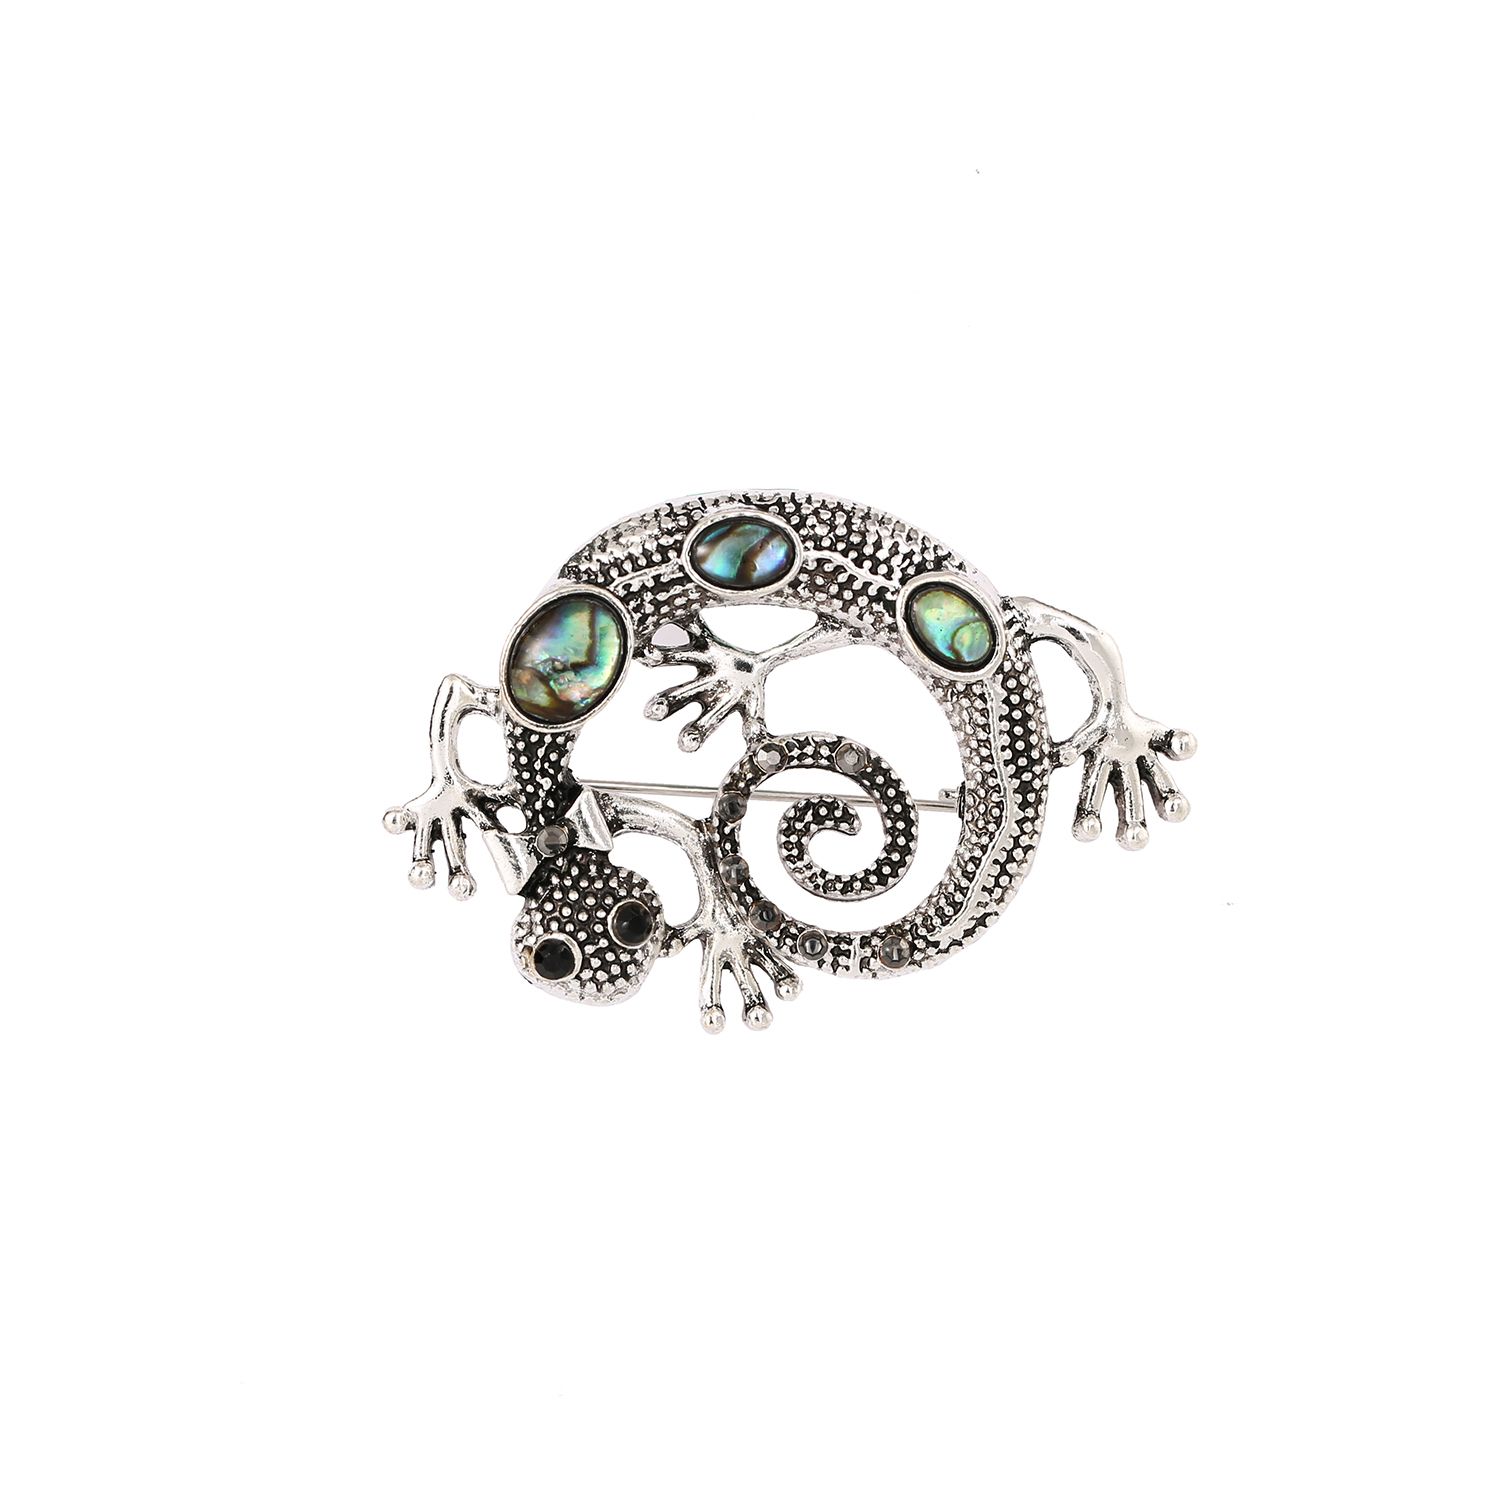 Custom lizard design fine jewelry brooch pin for women men